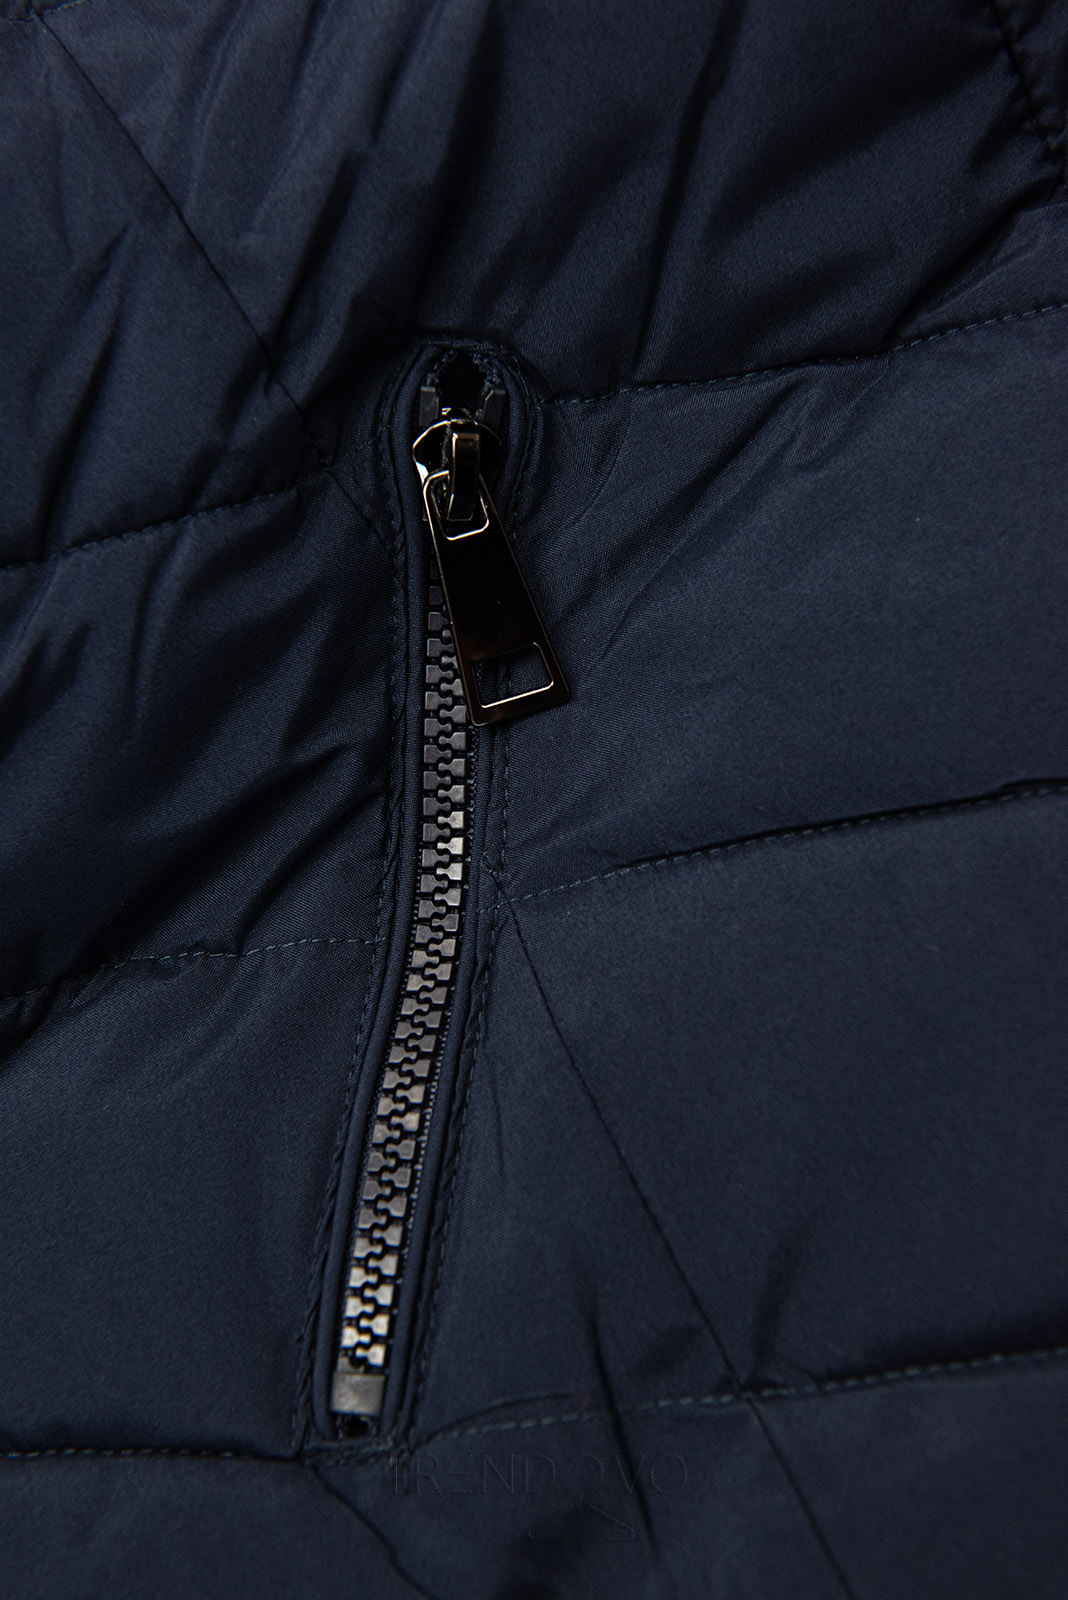 Tmavě modrá zimní bunda tvarovaná pro širší boky